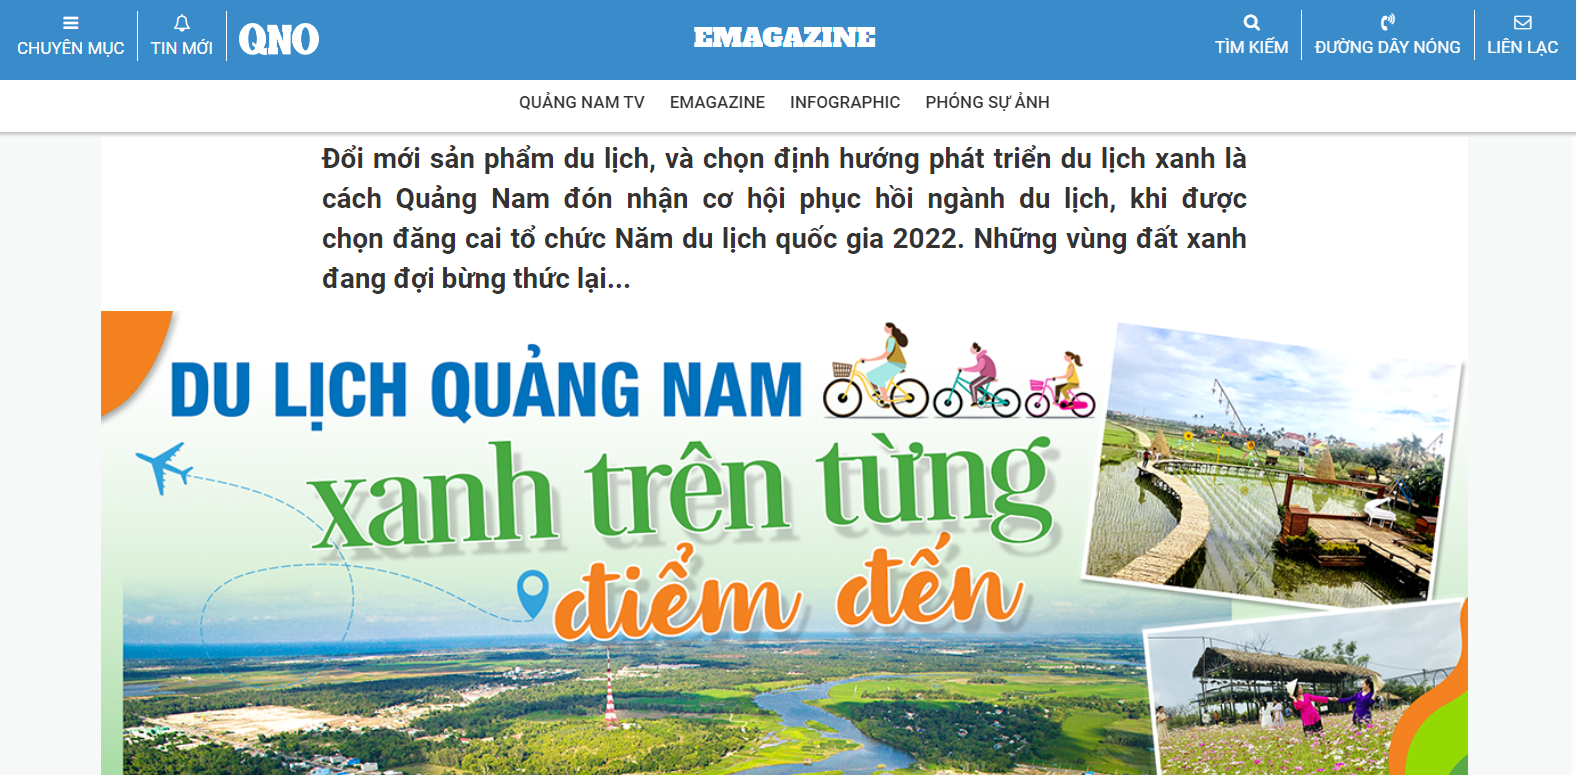 Nhiều bài viết tuyên truyền Năm Du lịch quốc gia 2022 - “Quảng Nam điểm đến du lịch xanh” được đăng tải trên báo Quảng Nam.